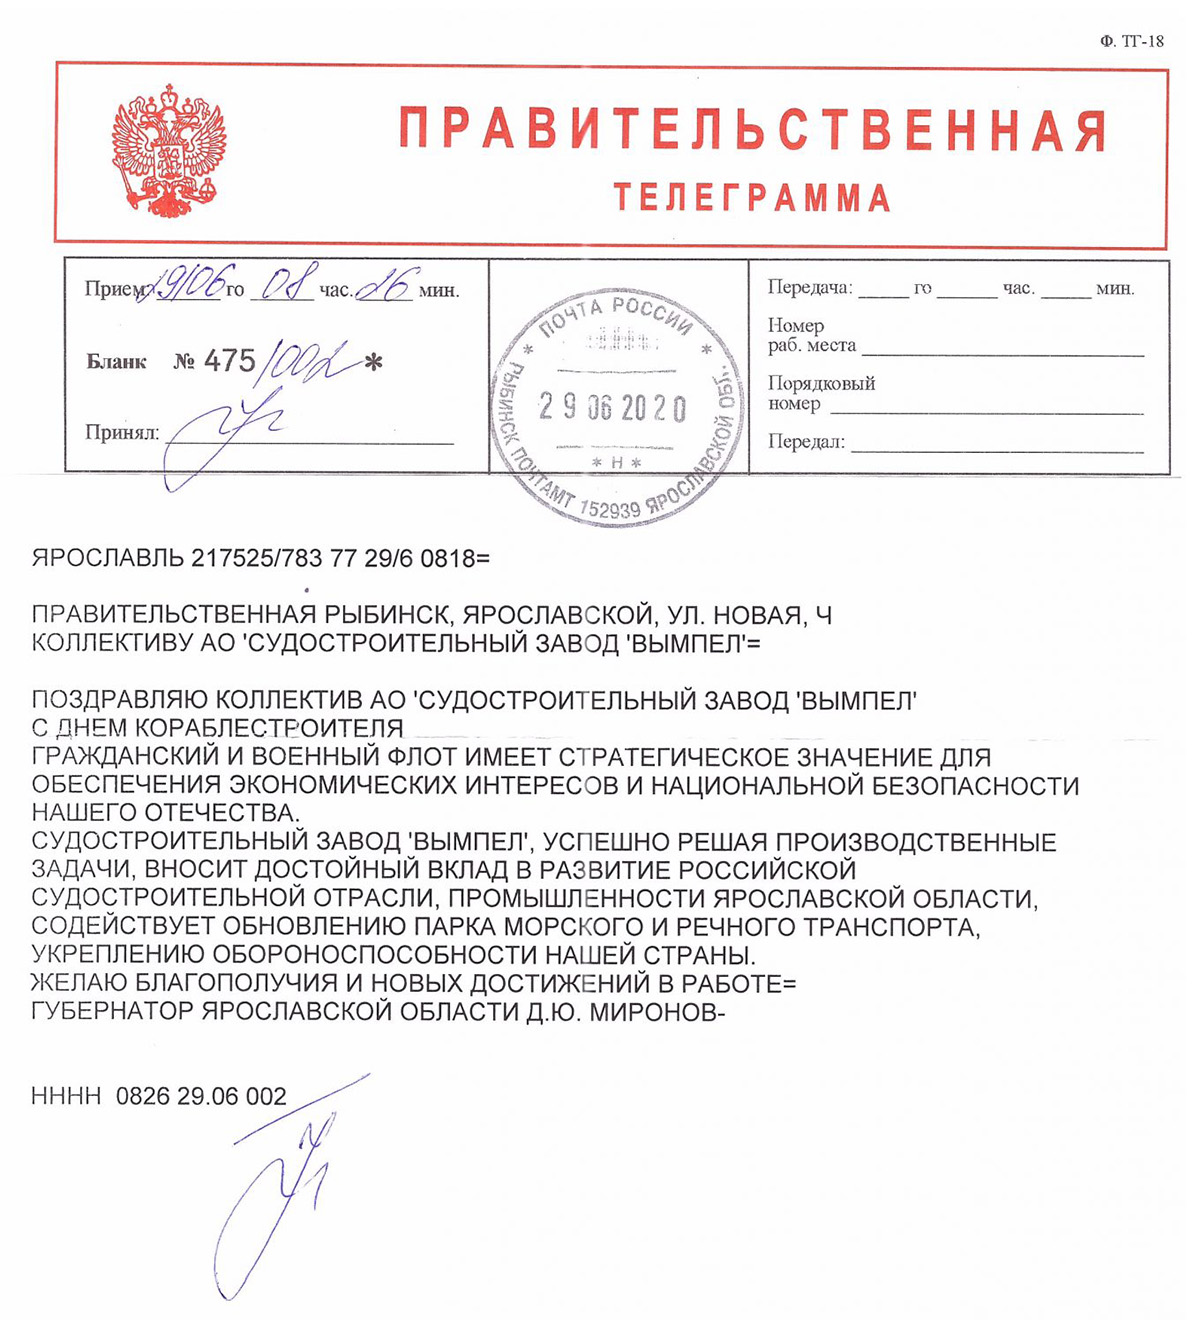 В адрес коллектива предприятия поступила правительственная телеграмма от губернатора Ярославской области Дмитрия Юрьевича Миронова.